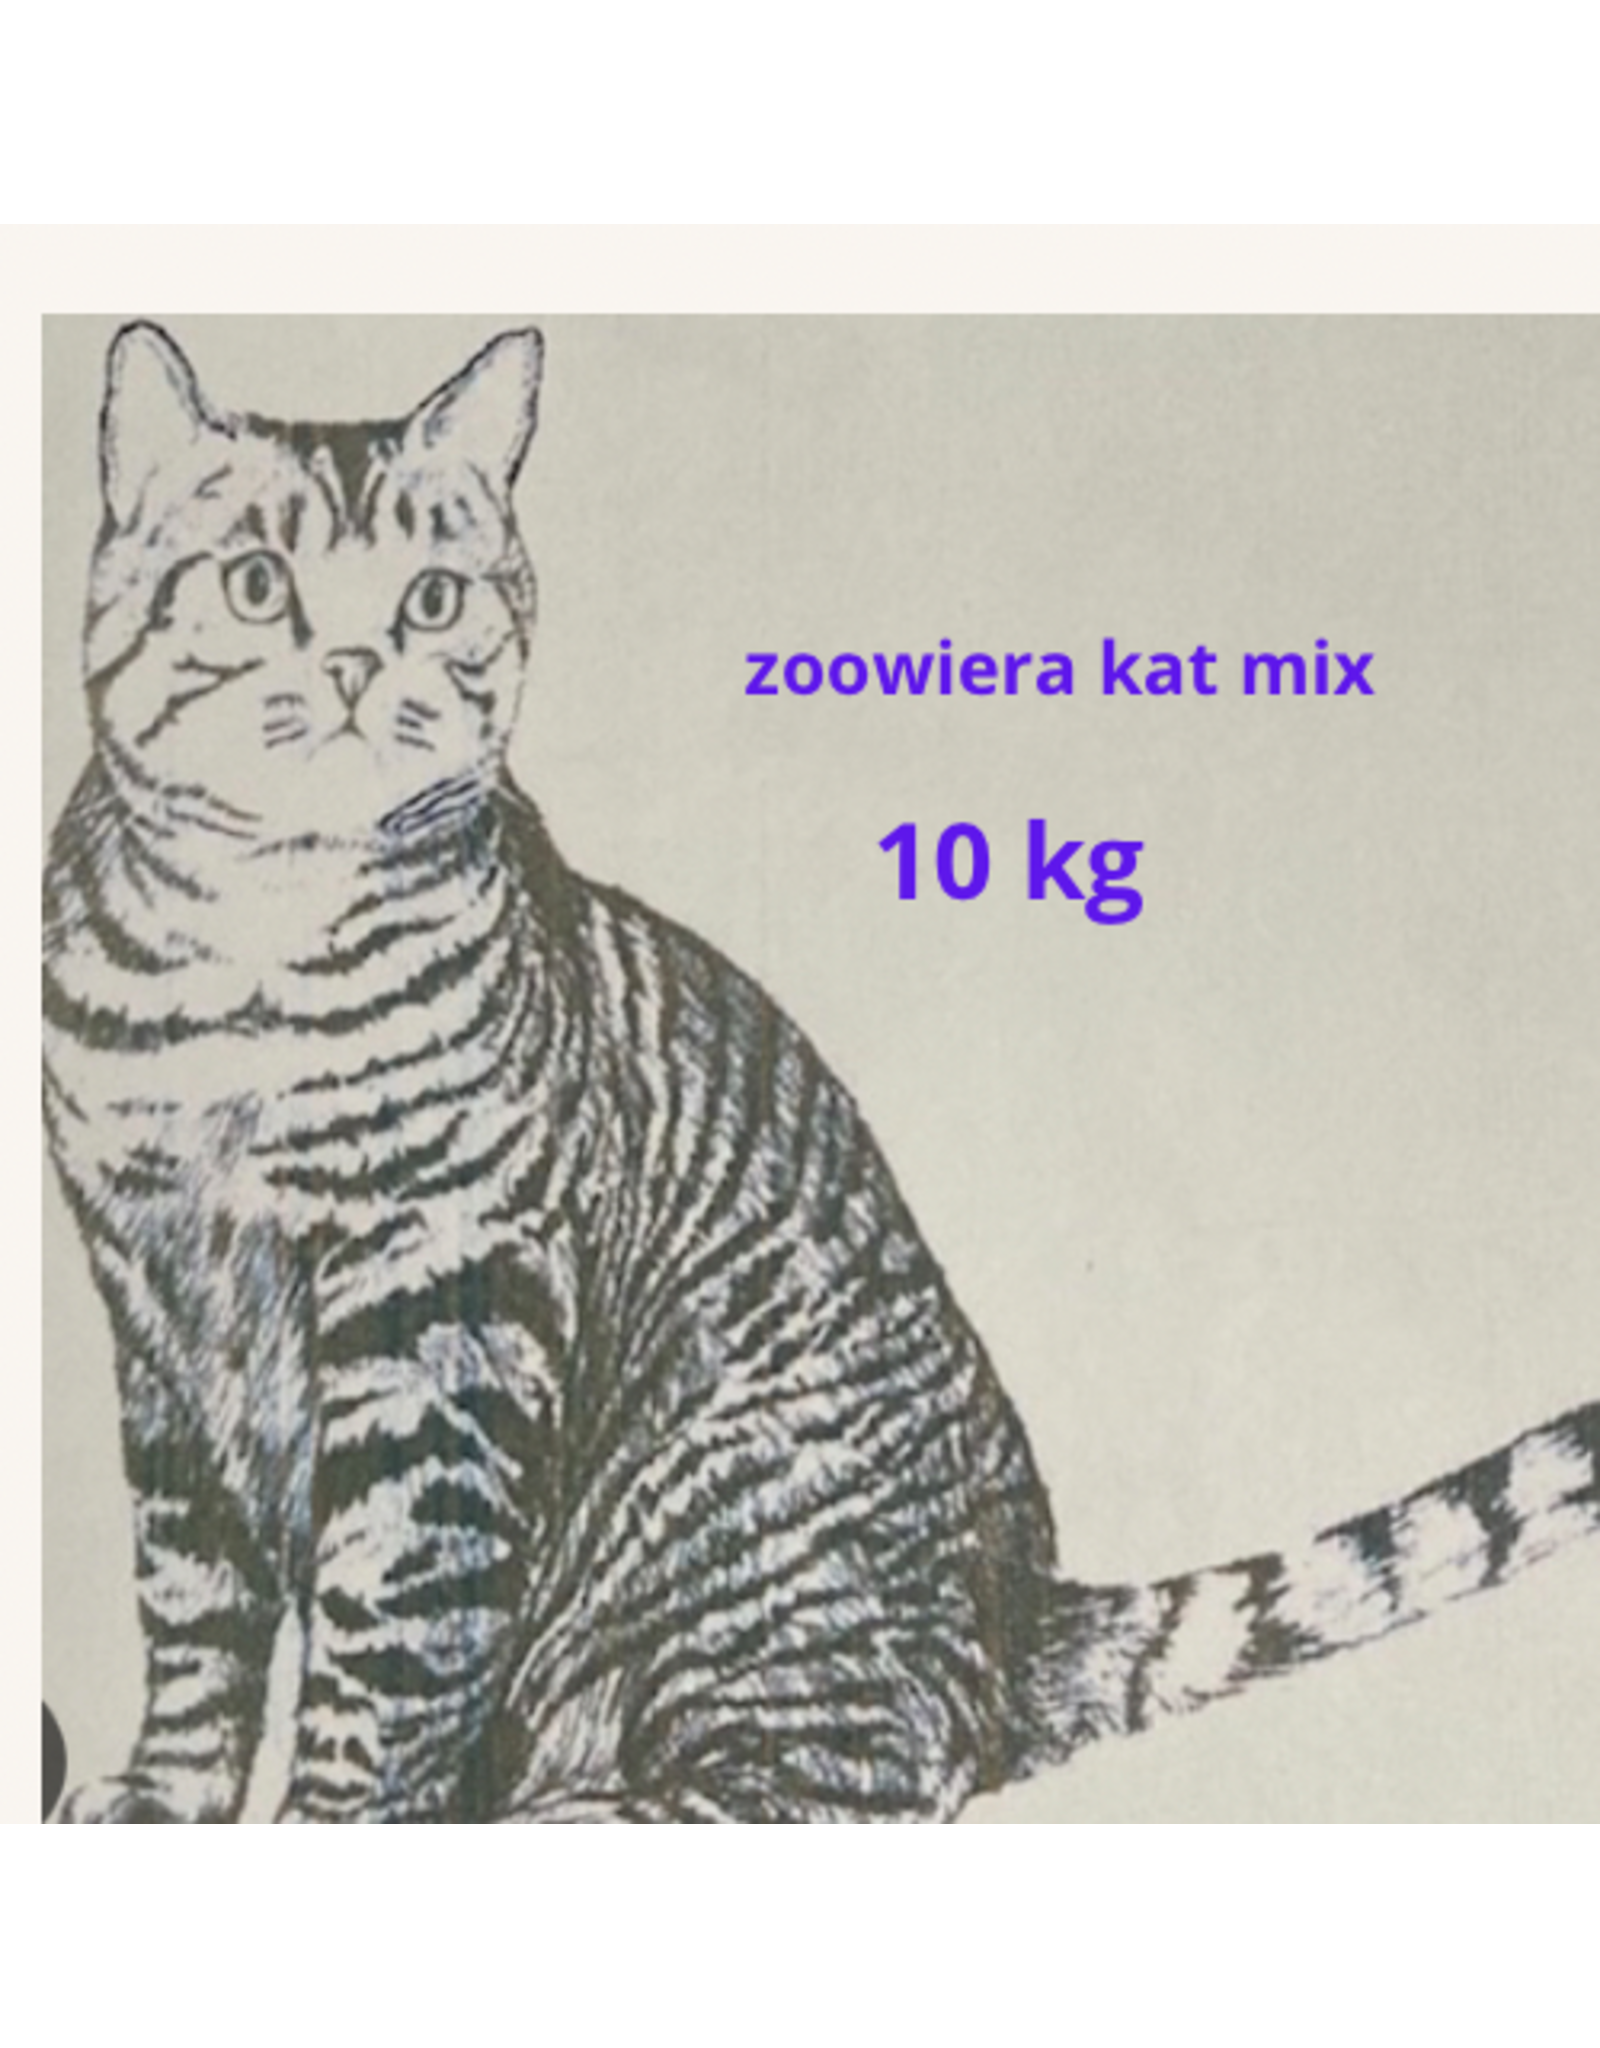 Zoowiera kat mix